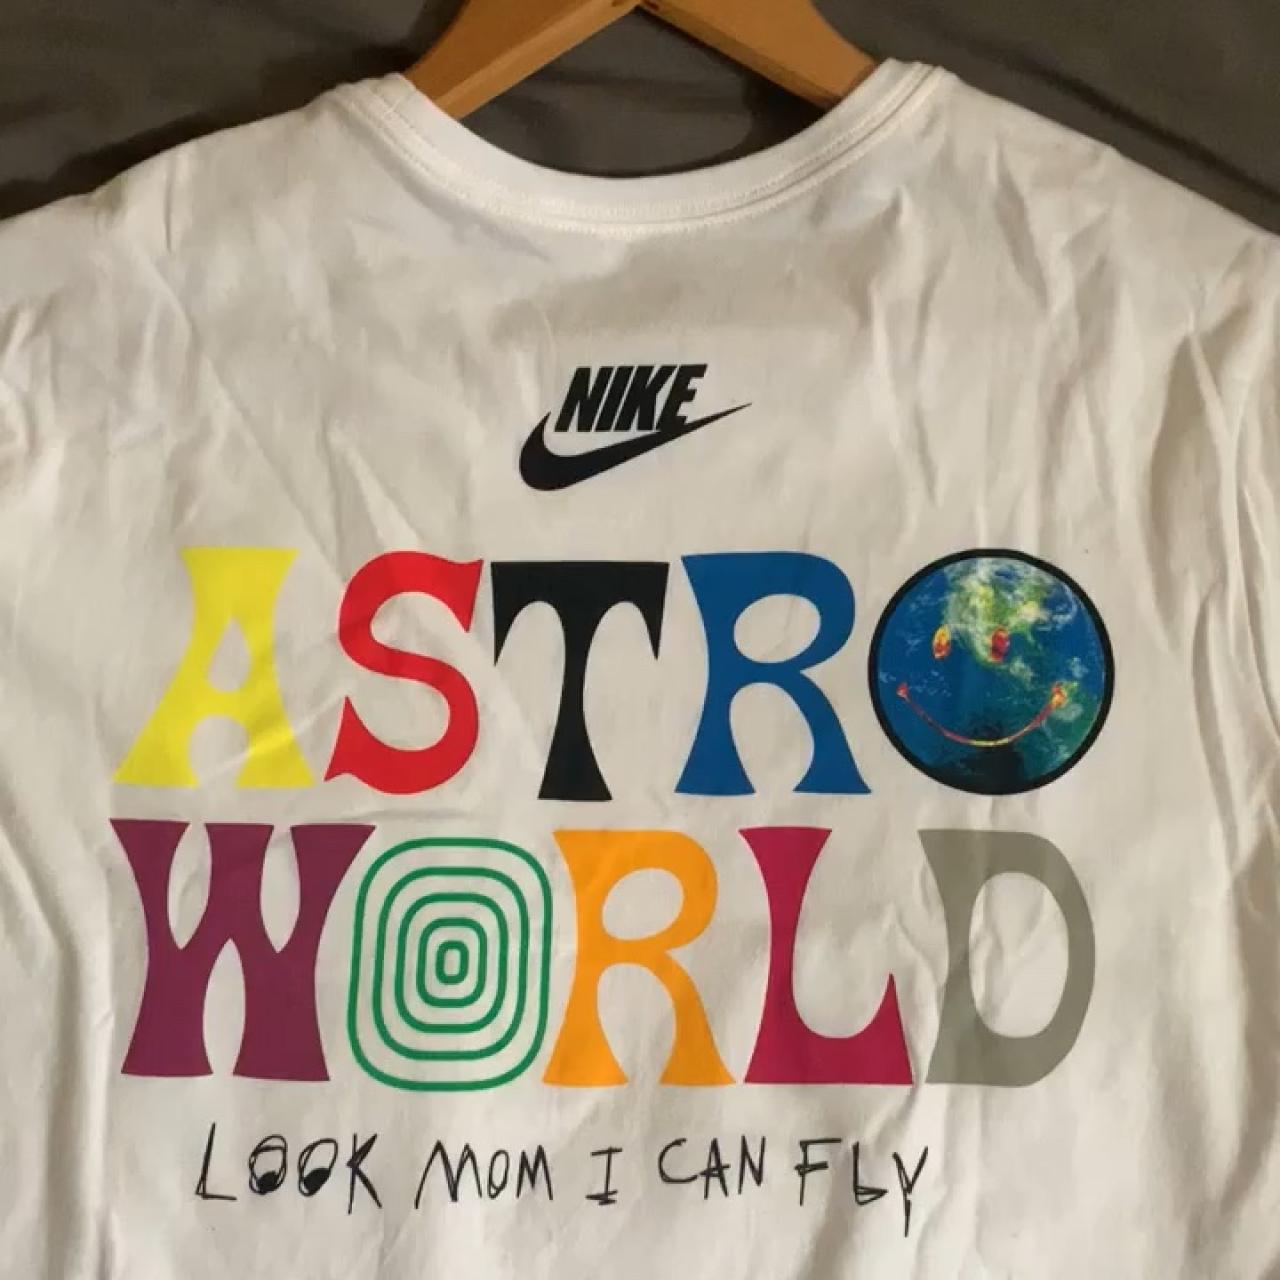 Travis Scott Astroworld Nike T-shirt in 